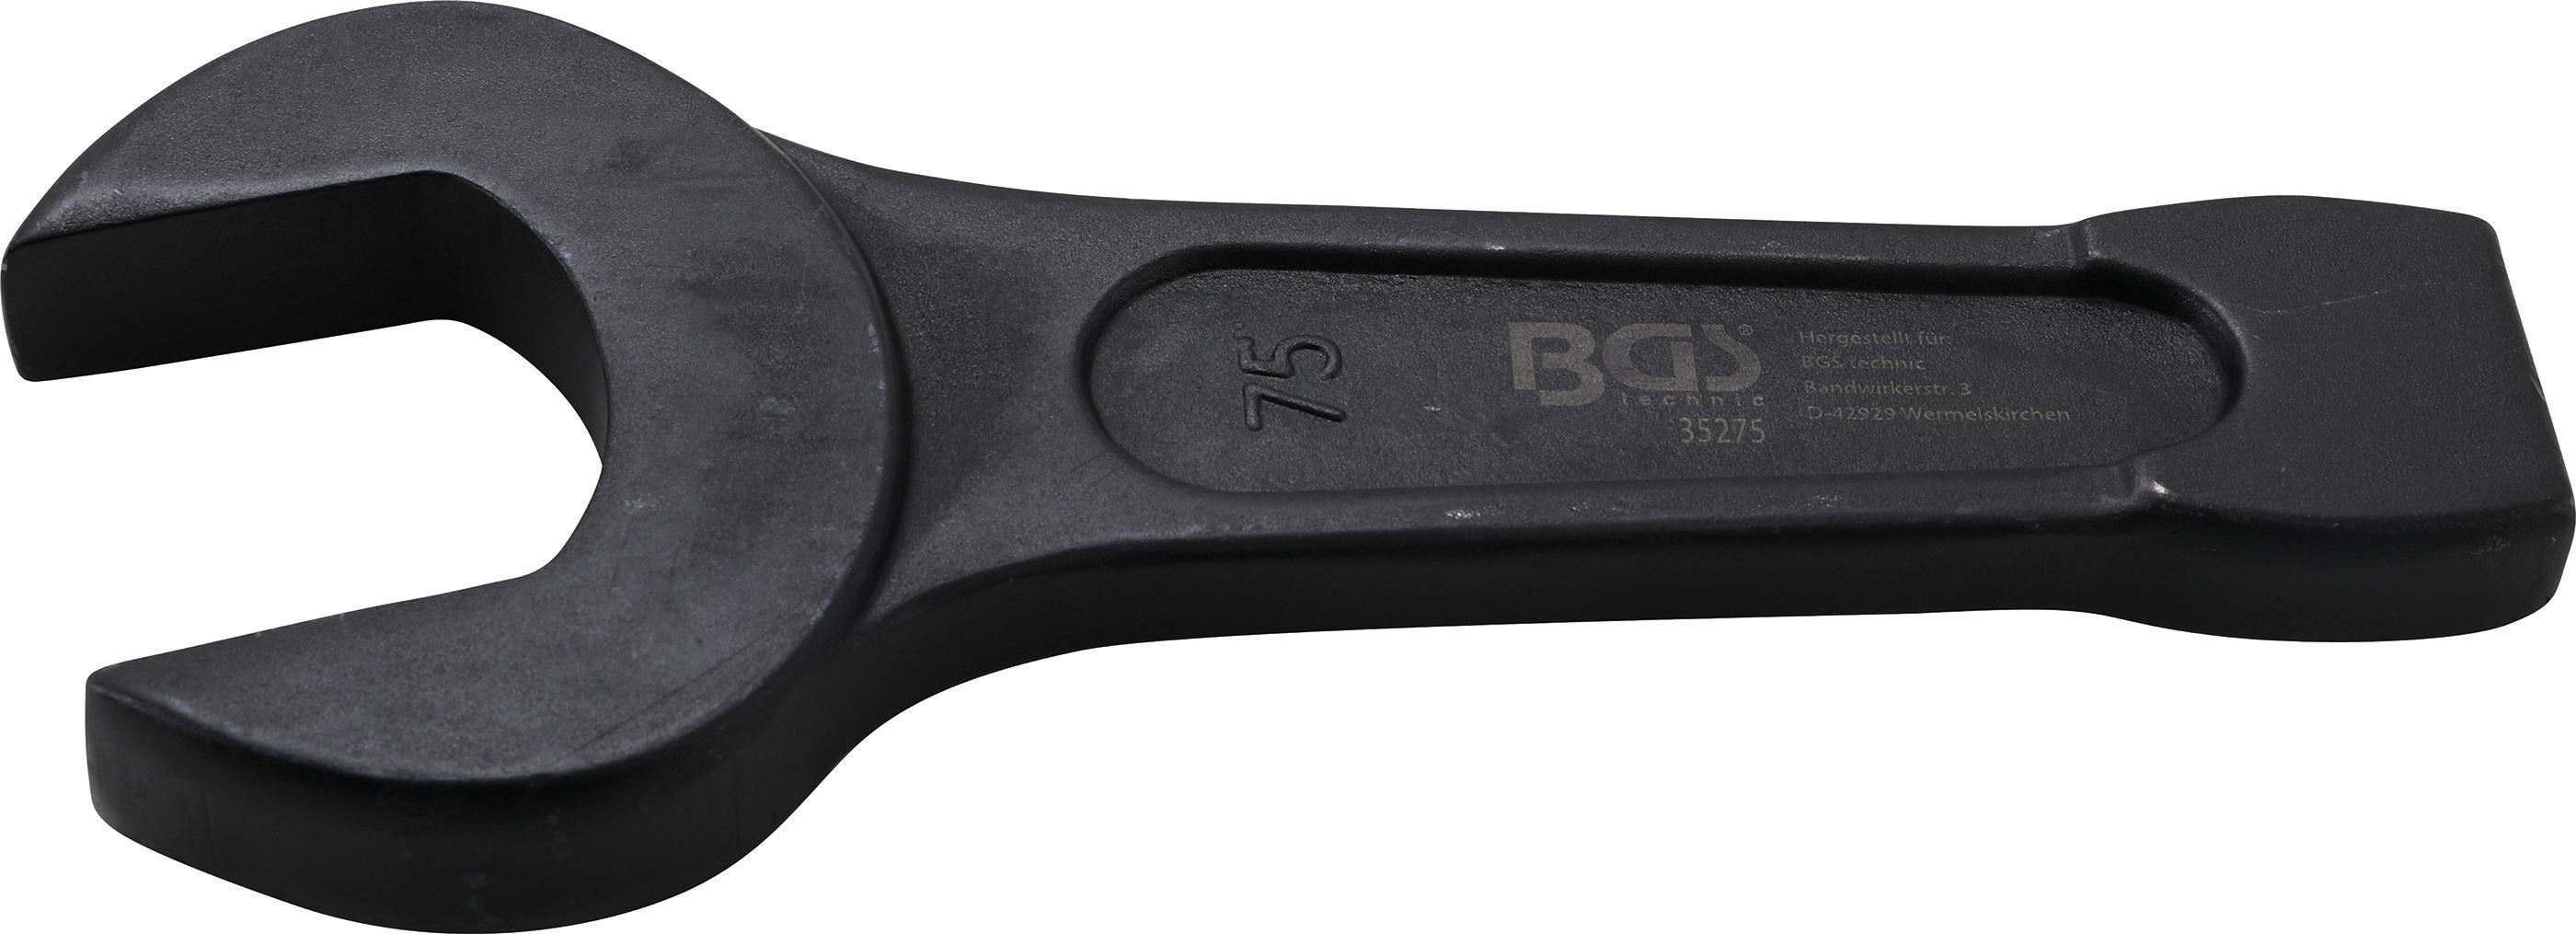 BGS technic Maulschlüssel Schlag-Maulschlüssel, SW 75 mm